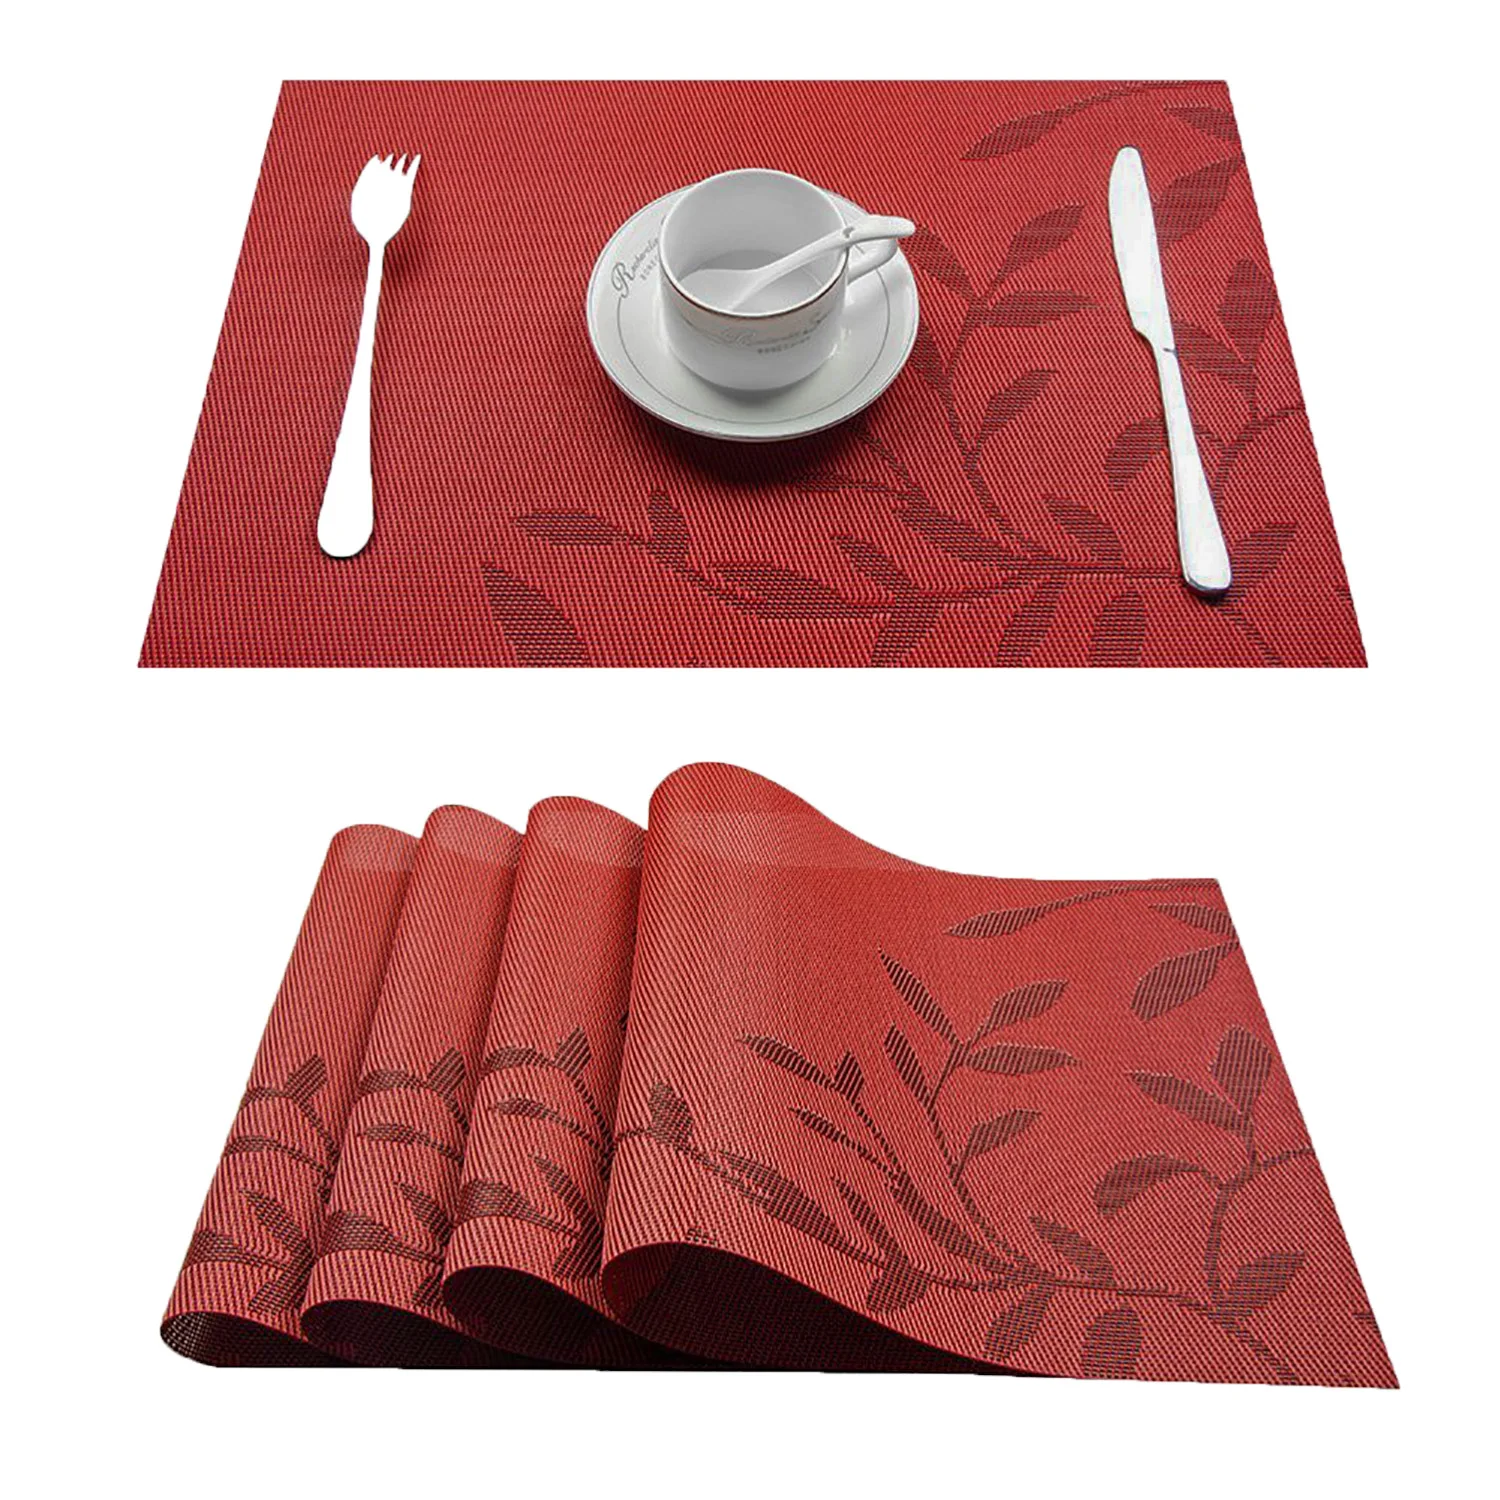 Топ Finel набор из 4 ПВХ с цветочным узором столовые приборы для обеденного стола runner постельное белье коврик для кухни аксессуары чашка винный коврик